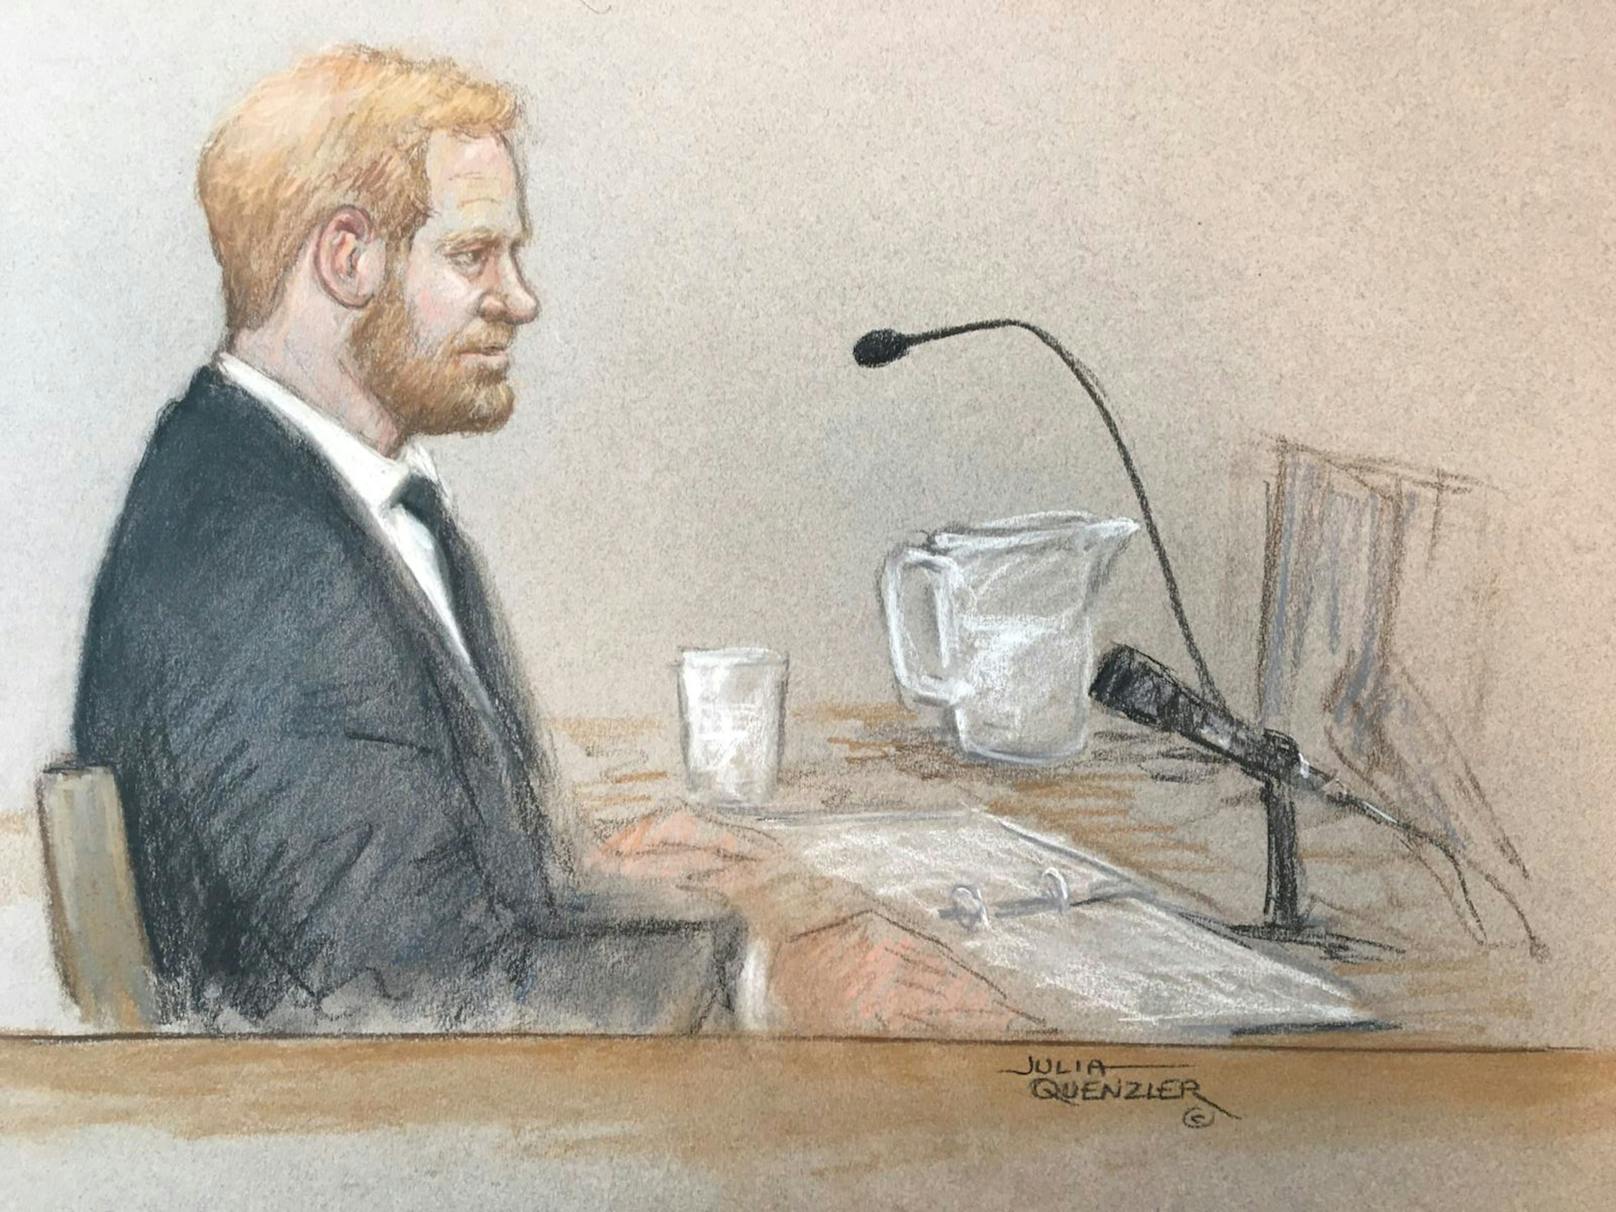 Um 11.30 Uhr wurde Prinz Harry vom Richter laut "Sky News" sofort in den Zeugenstand gerufen. Er nahm Platz und bestätigt, dass er mit Prinz Harry angesprochen werden will. Kameras sind innerhalb des Gerichtssaals nicht erlaubt.